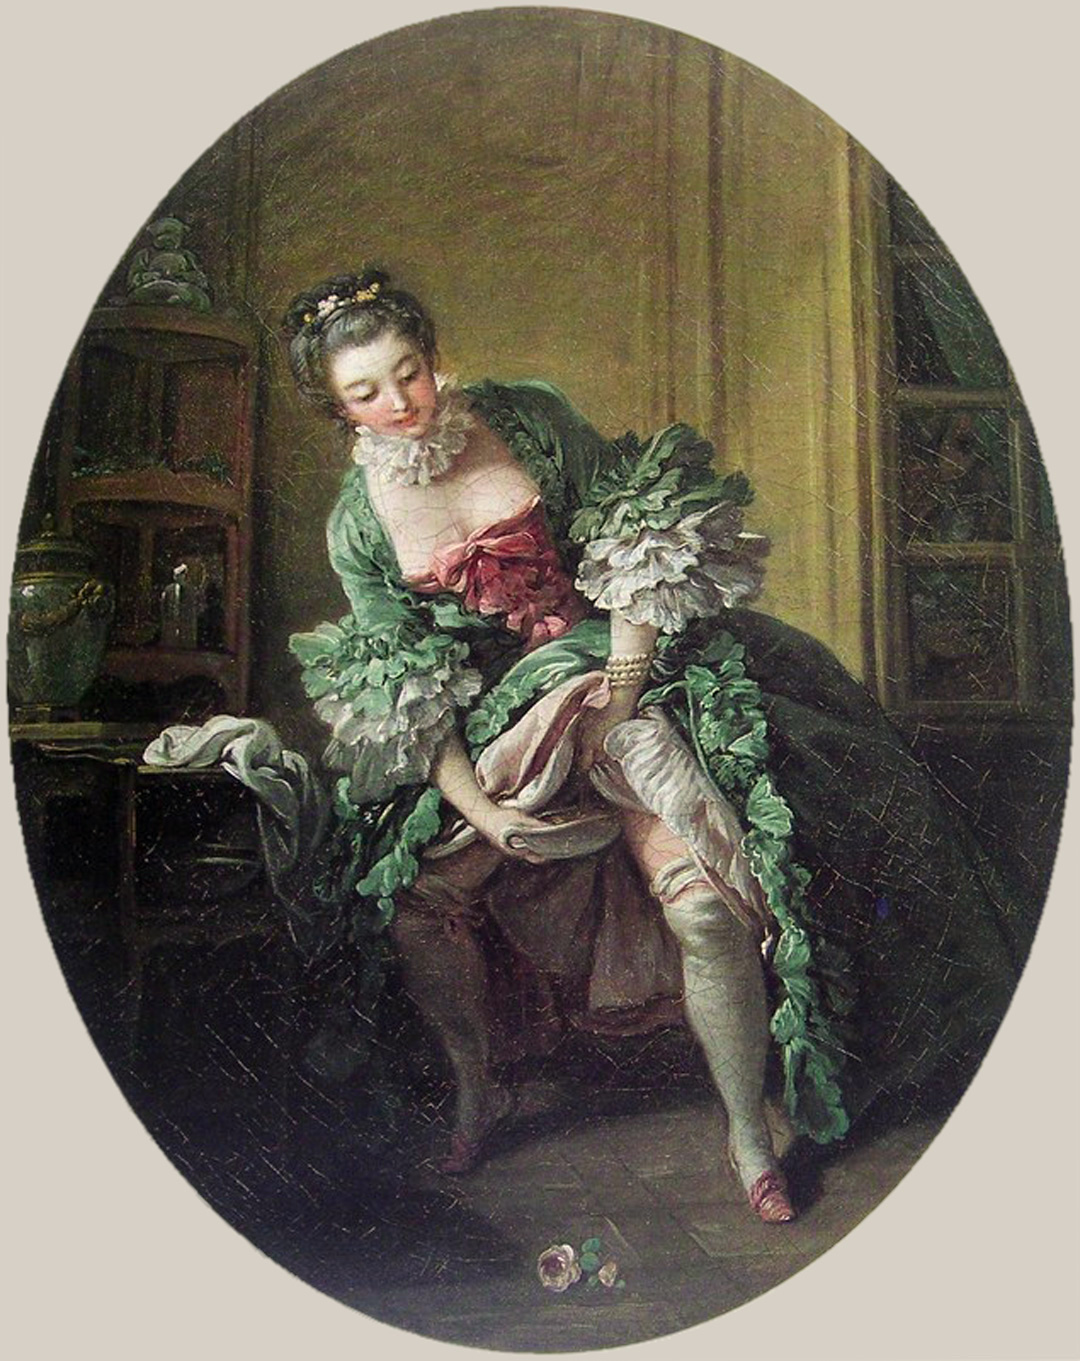 François_Boucher_-_La_Toilette_intime_(Une_Femme_qui_pisse),_1760s